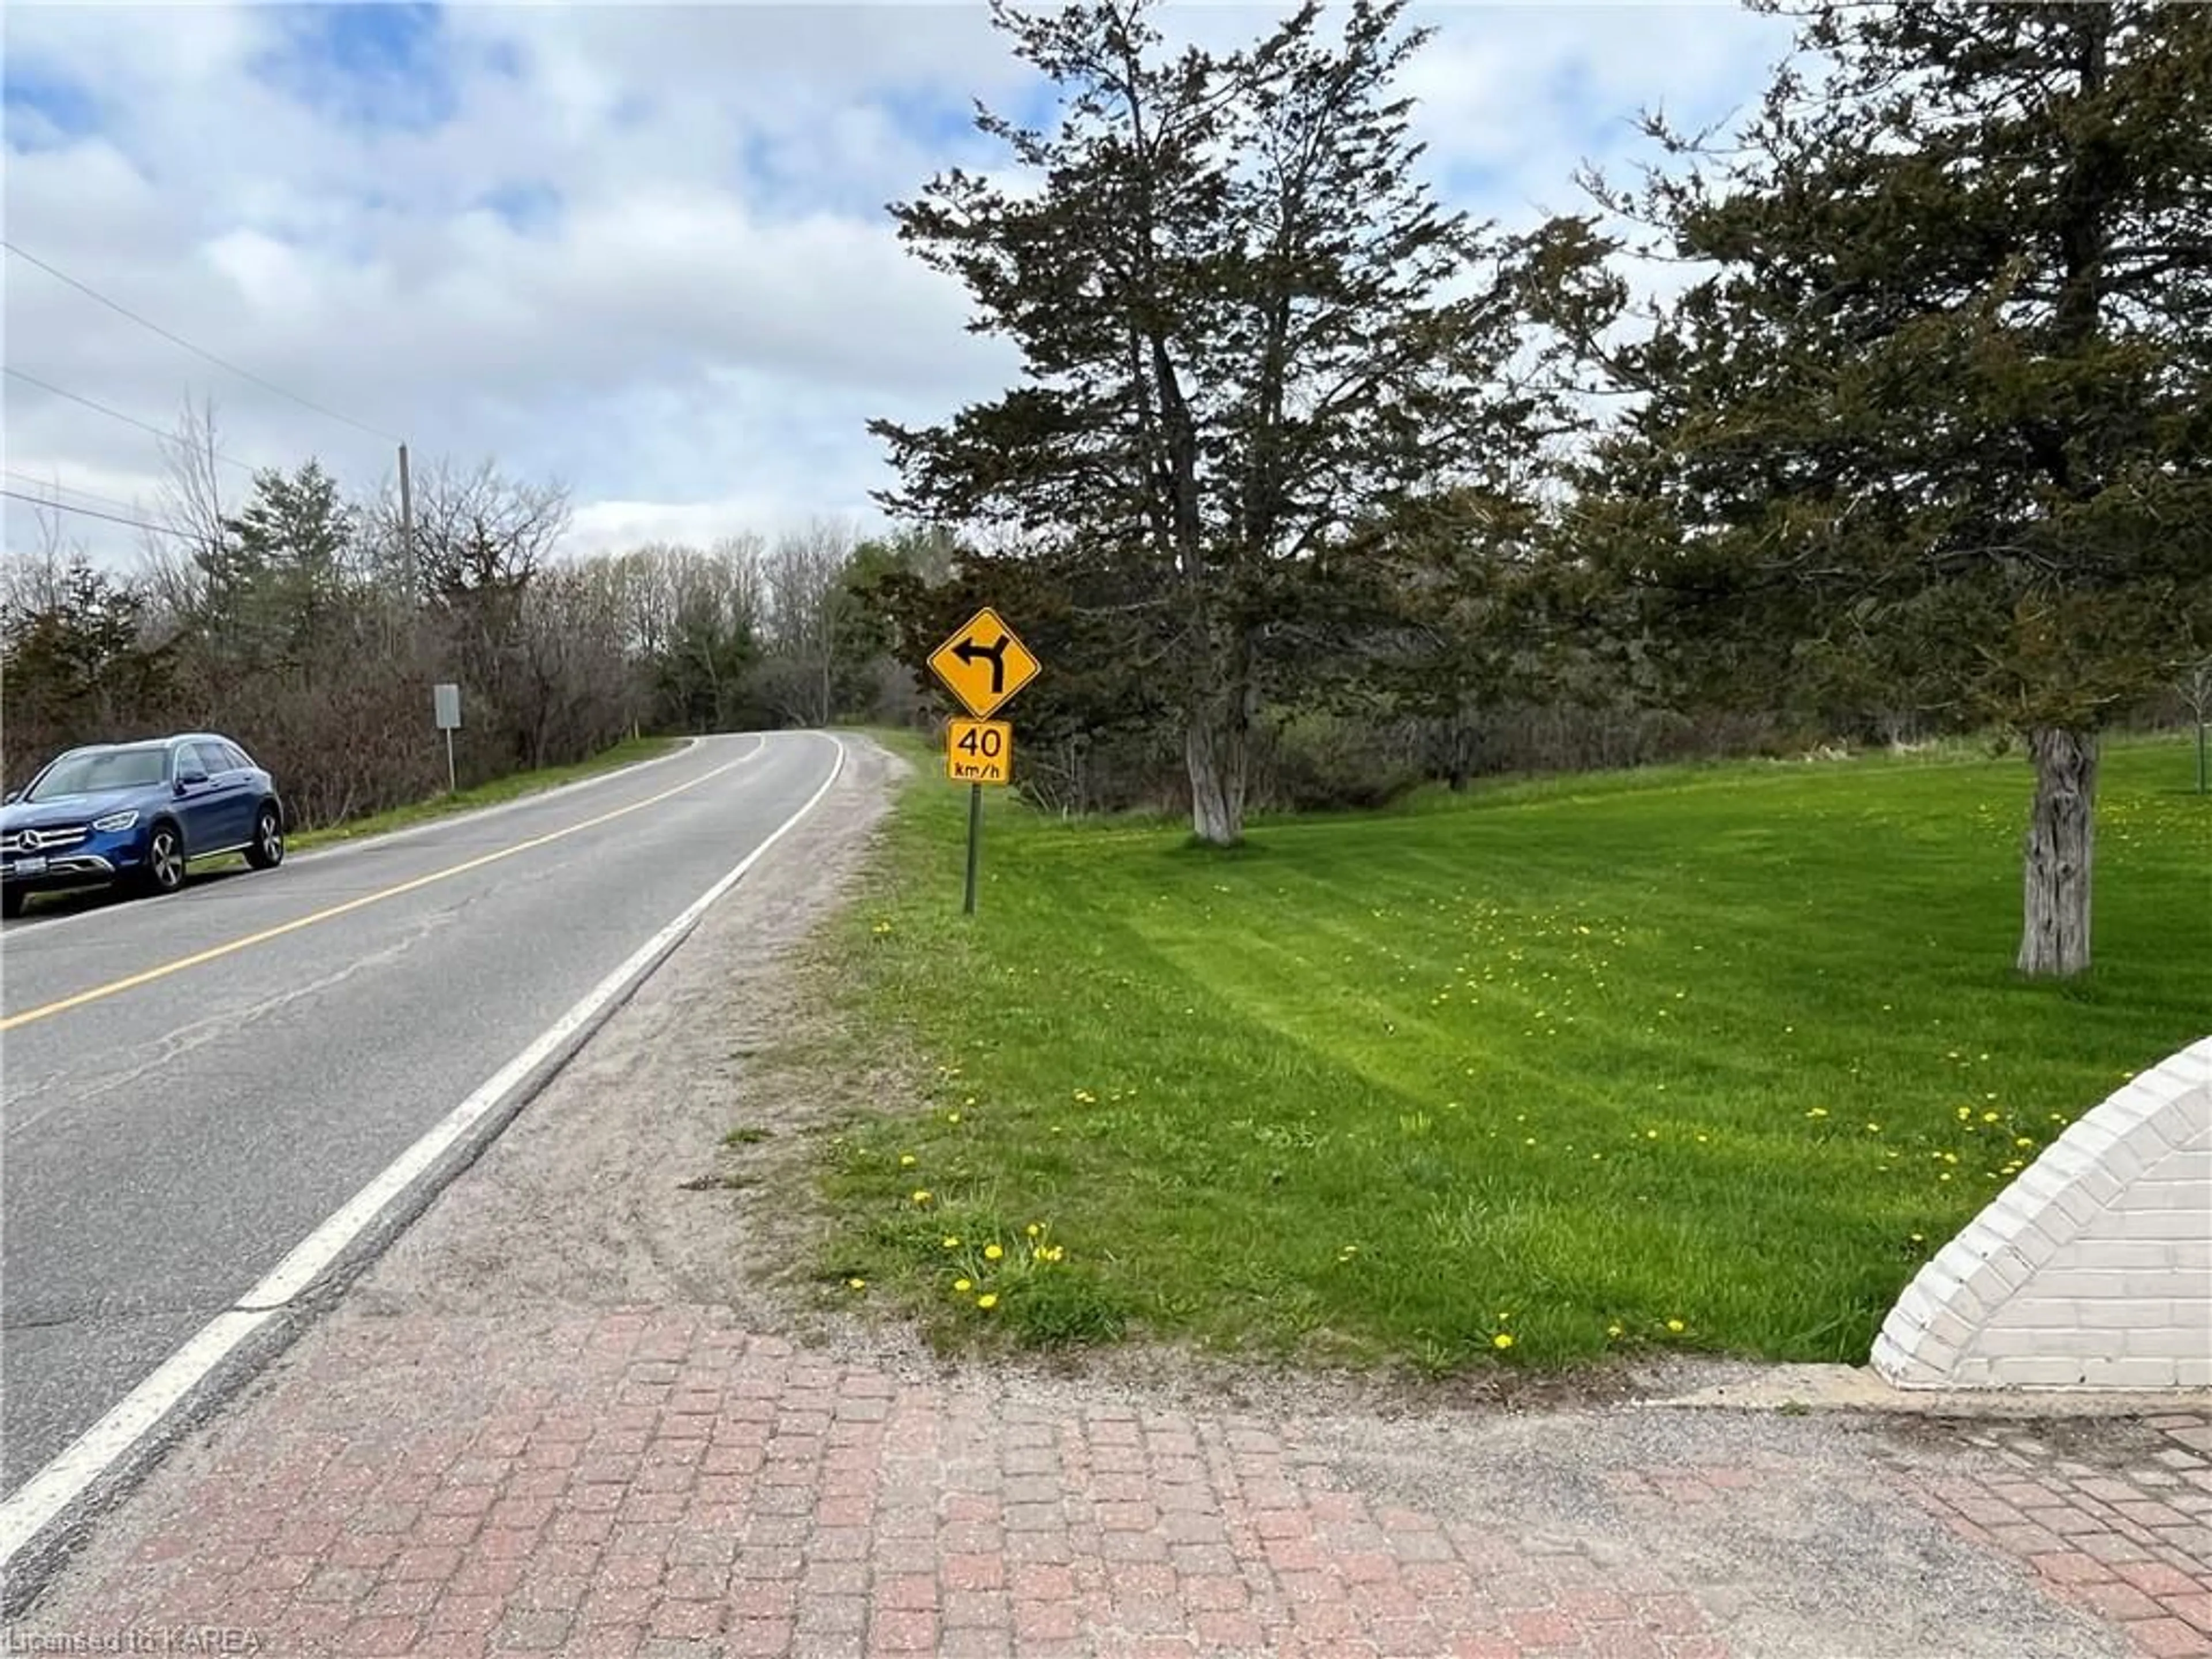 Street view for 1685 Sunnyside Rd, Kingston Ontario K7L 4V4